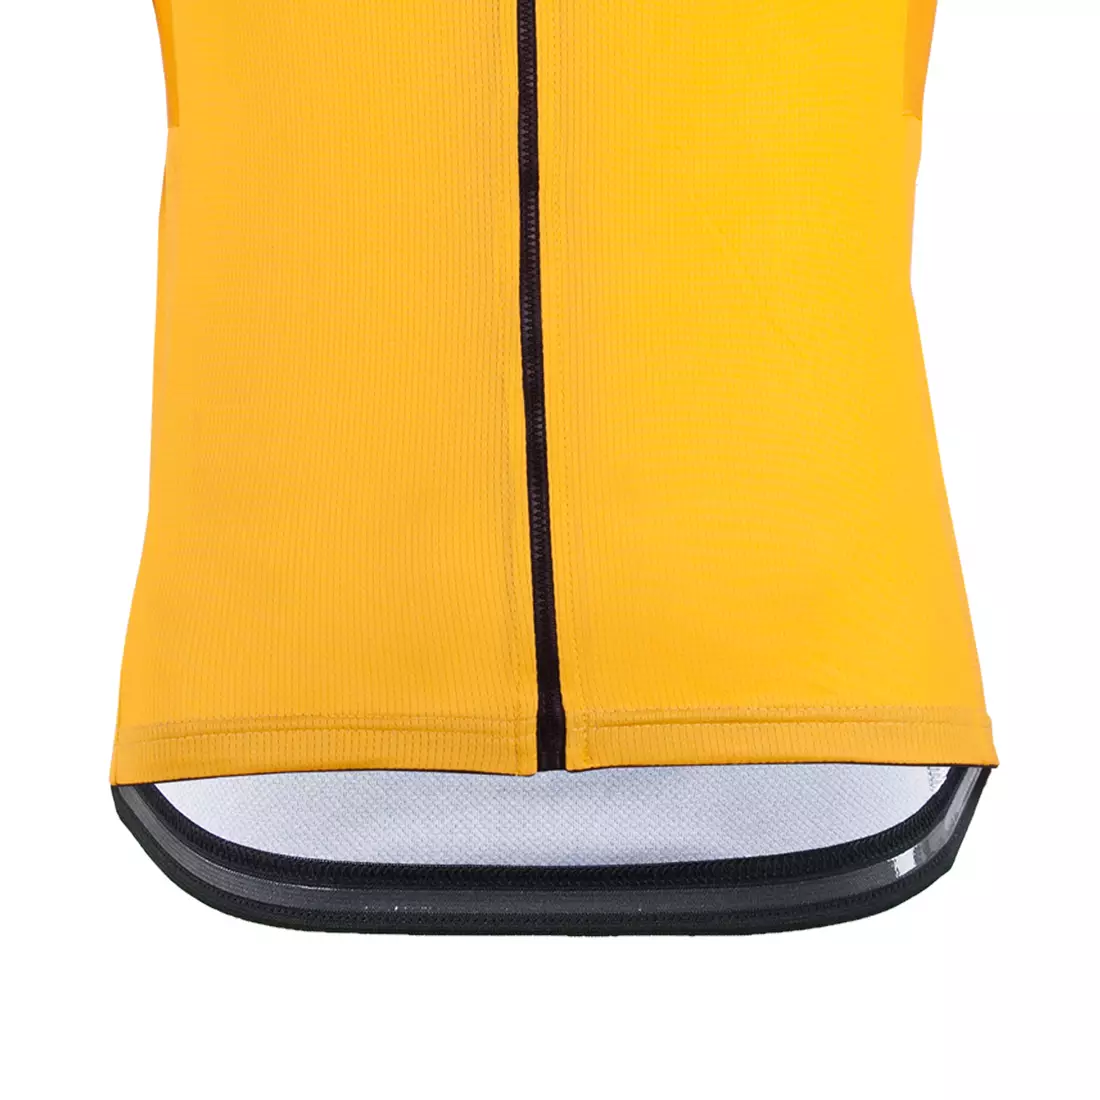 DEKO STYLE-0421 pánsky cyklistický dres s krátkym rukávom, orange